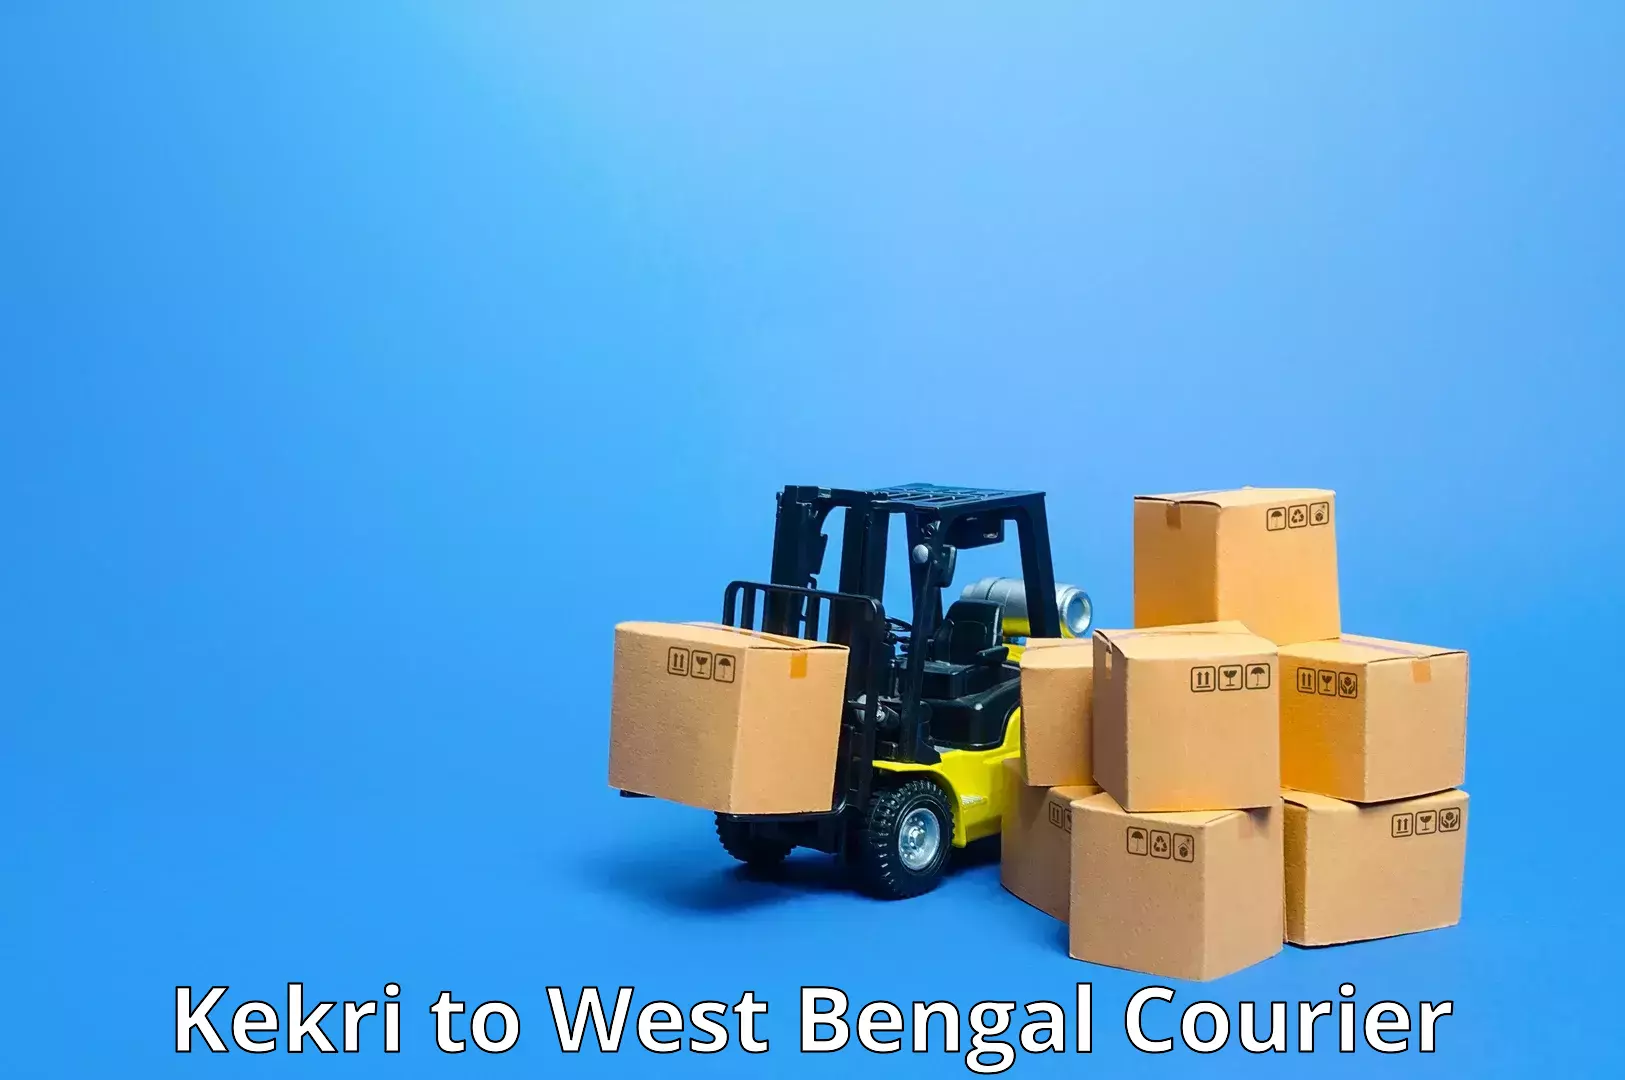 Courier service comparison Kekri to Park Street